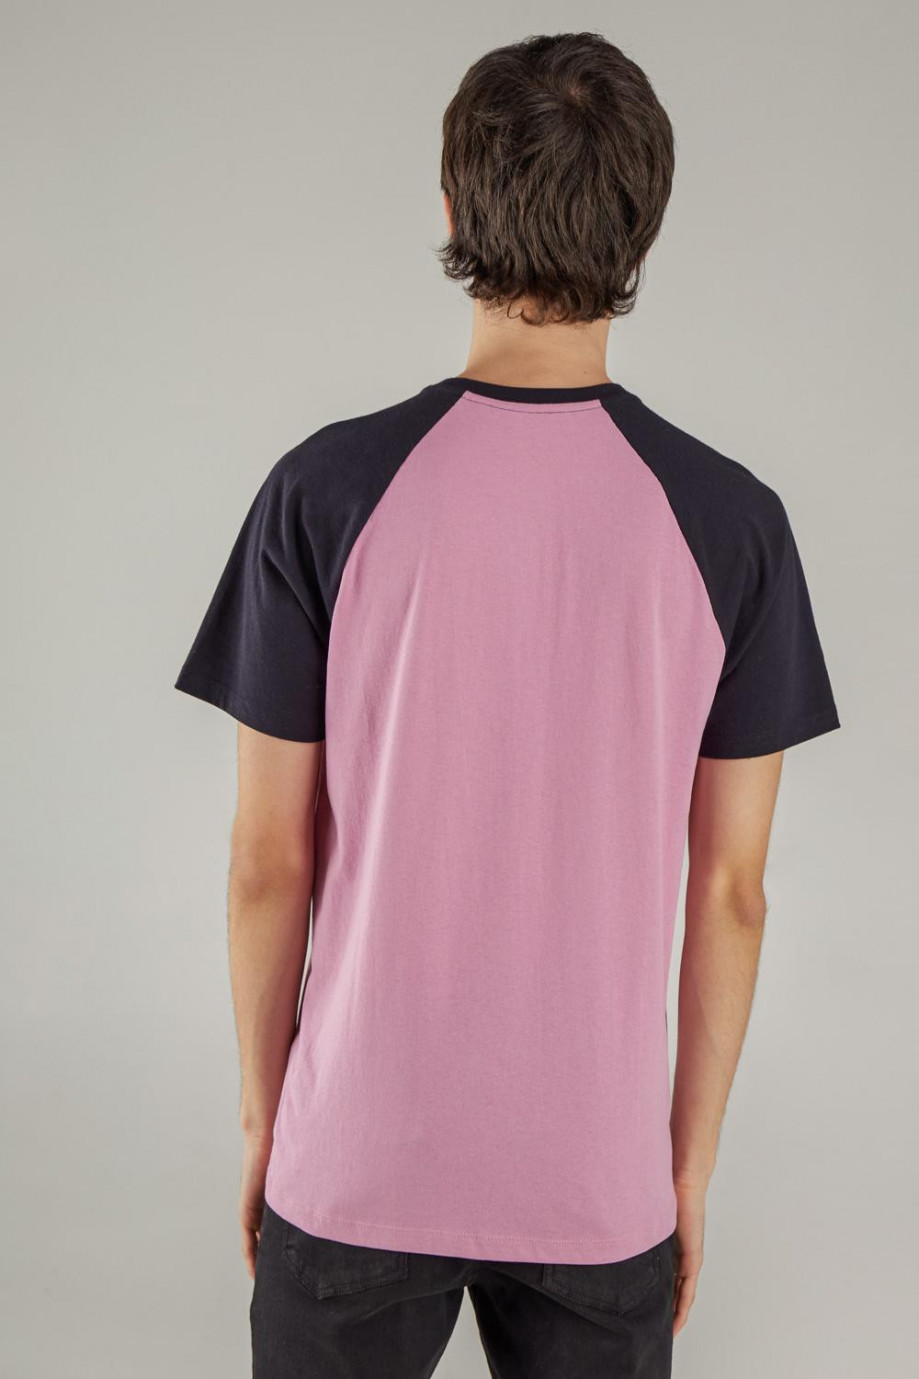 Camiseta, manga ranglan, estampado minimalista en frente.